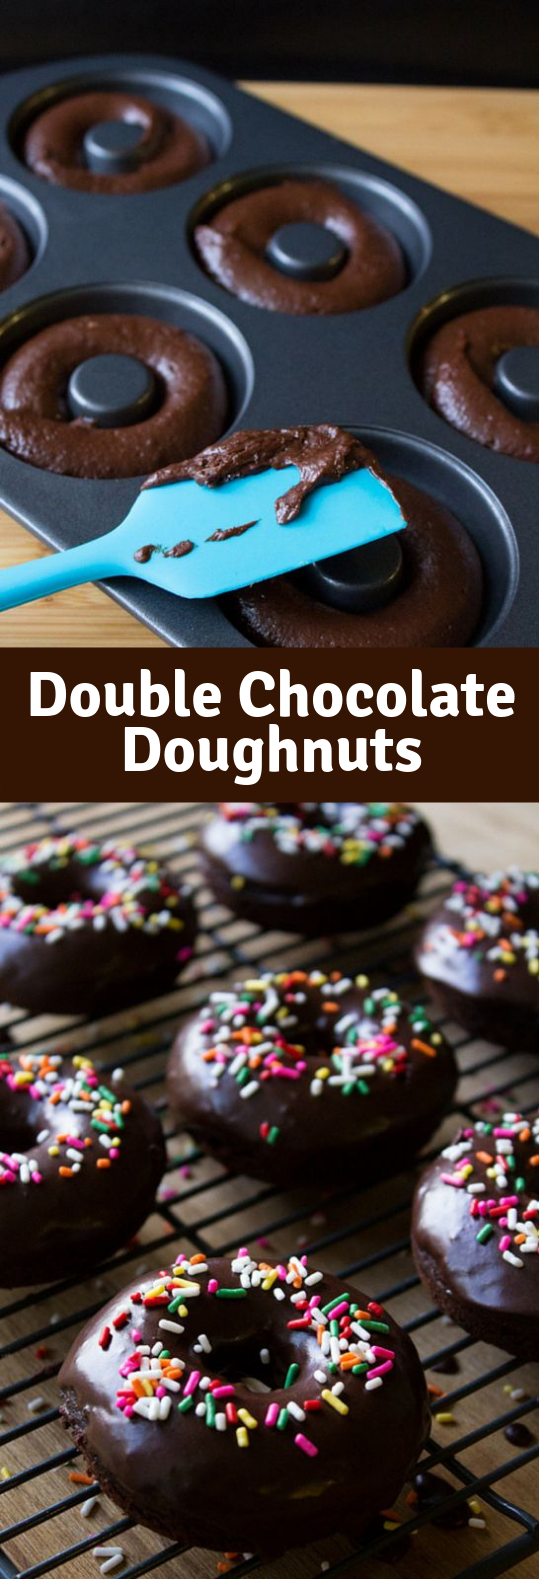 Double Chocolate Doughnuts #Chocolate #Doughnuts